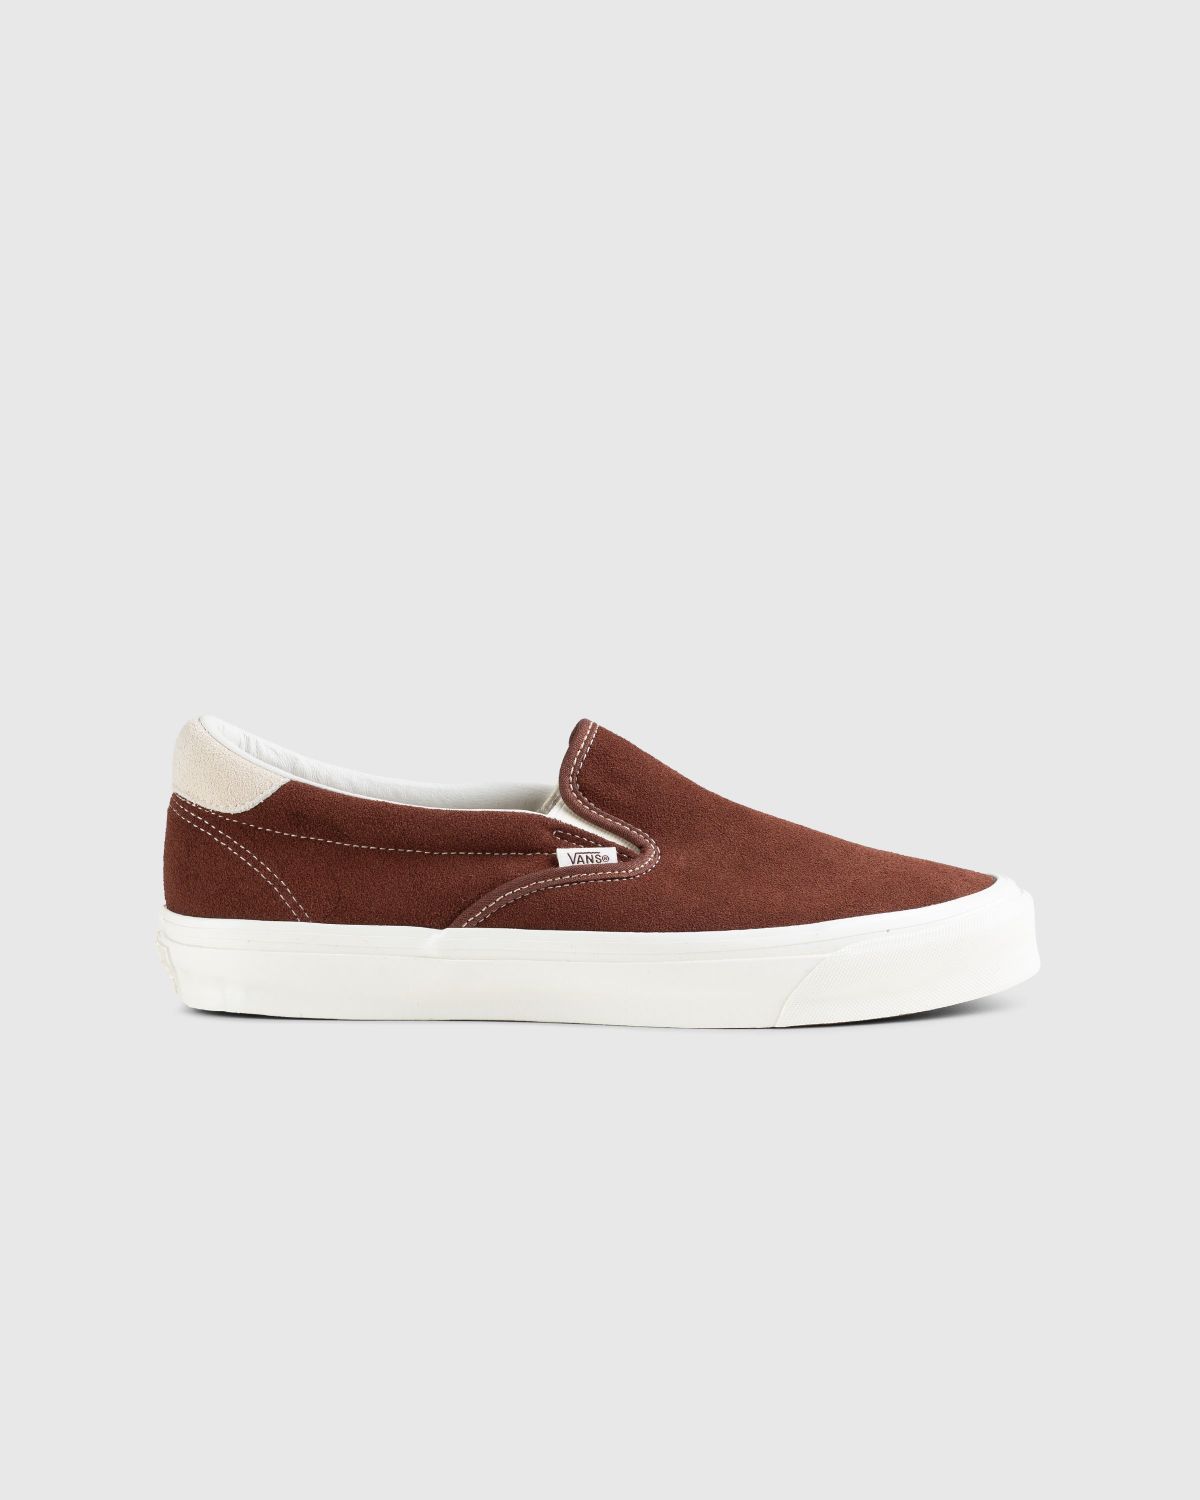 Vans – OG Slip-On 59 LX Suede Brown - Sneakers - Brown - Image 1